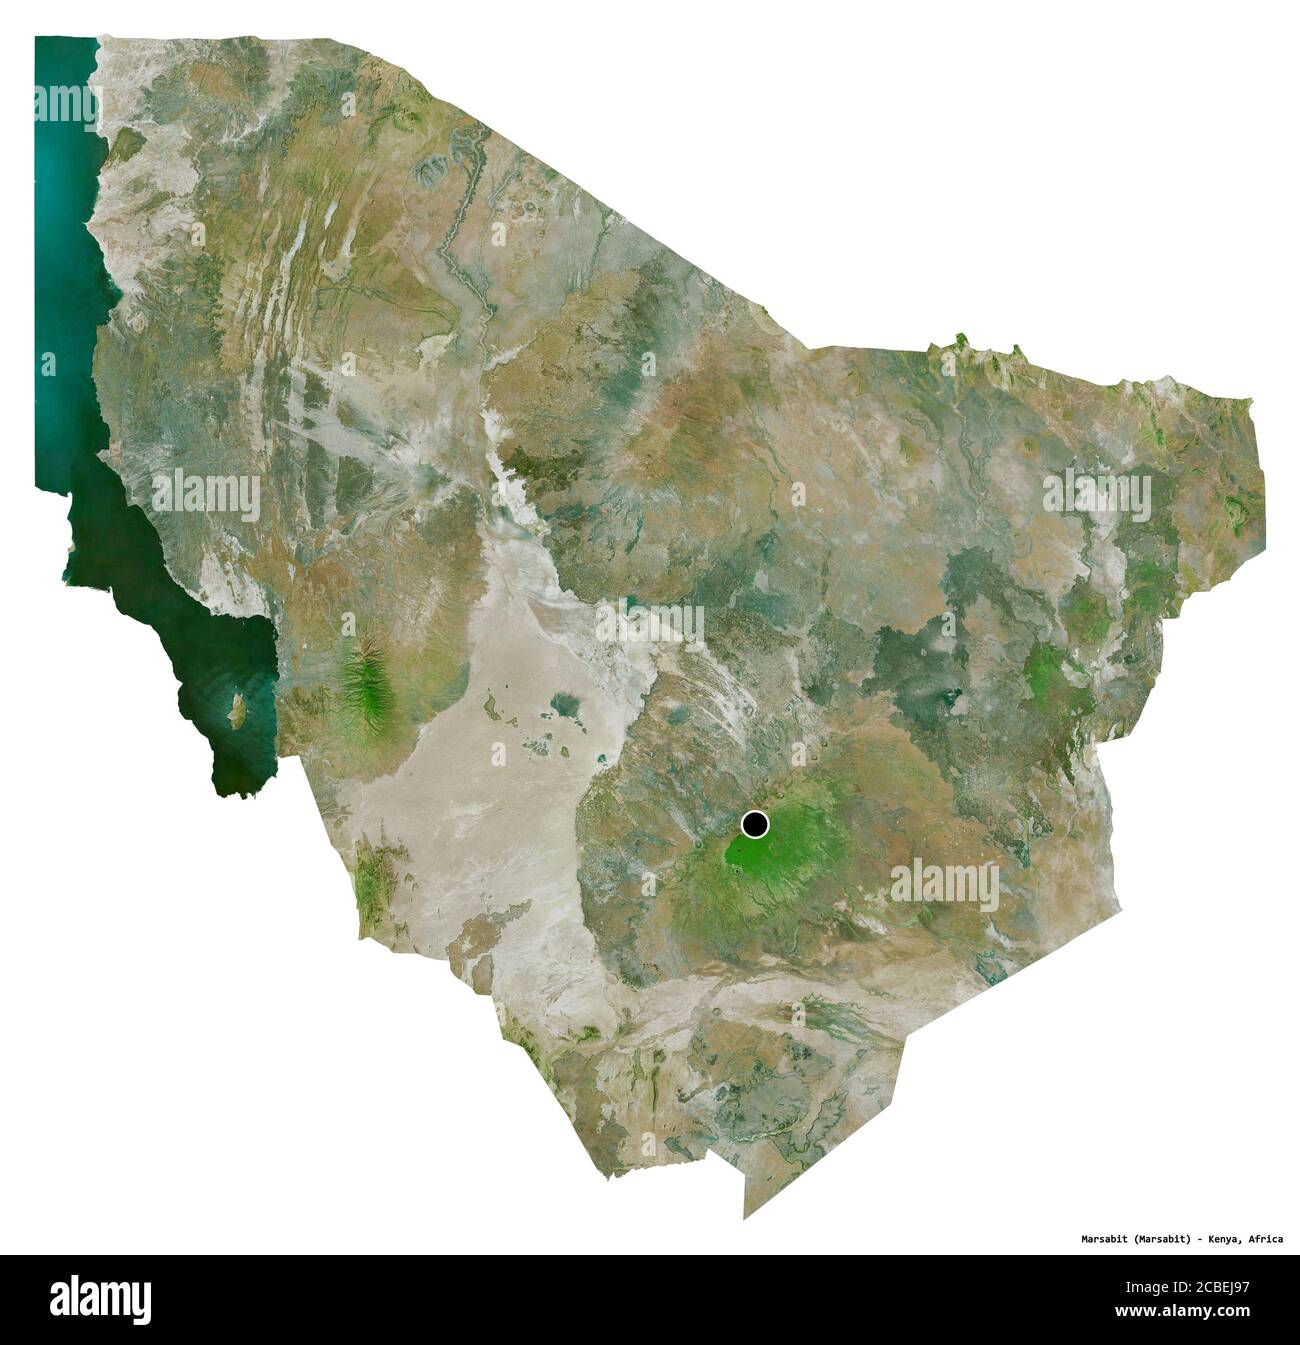 Forma di Marsabit, contea del Kenya, con la sua capitale isolata su sfondo bianco. Immagini satellitari. Rendering 3D Foto Stock